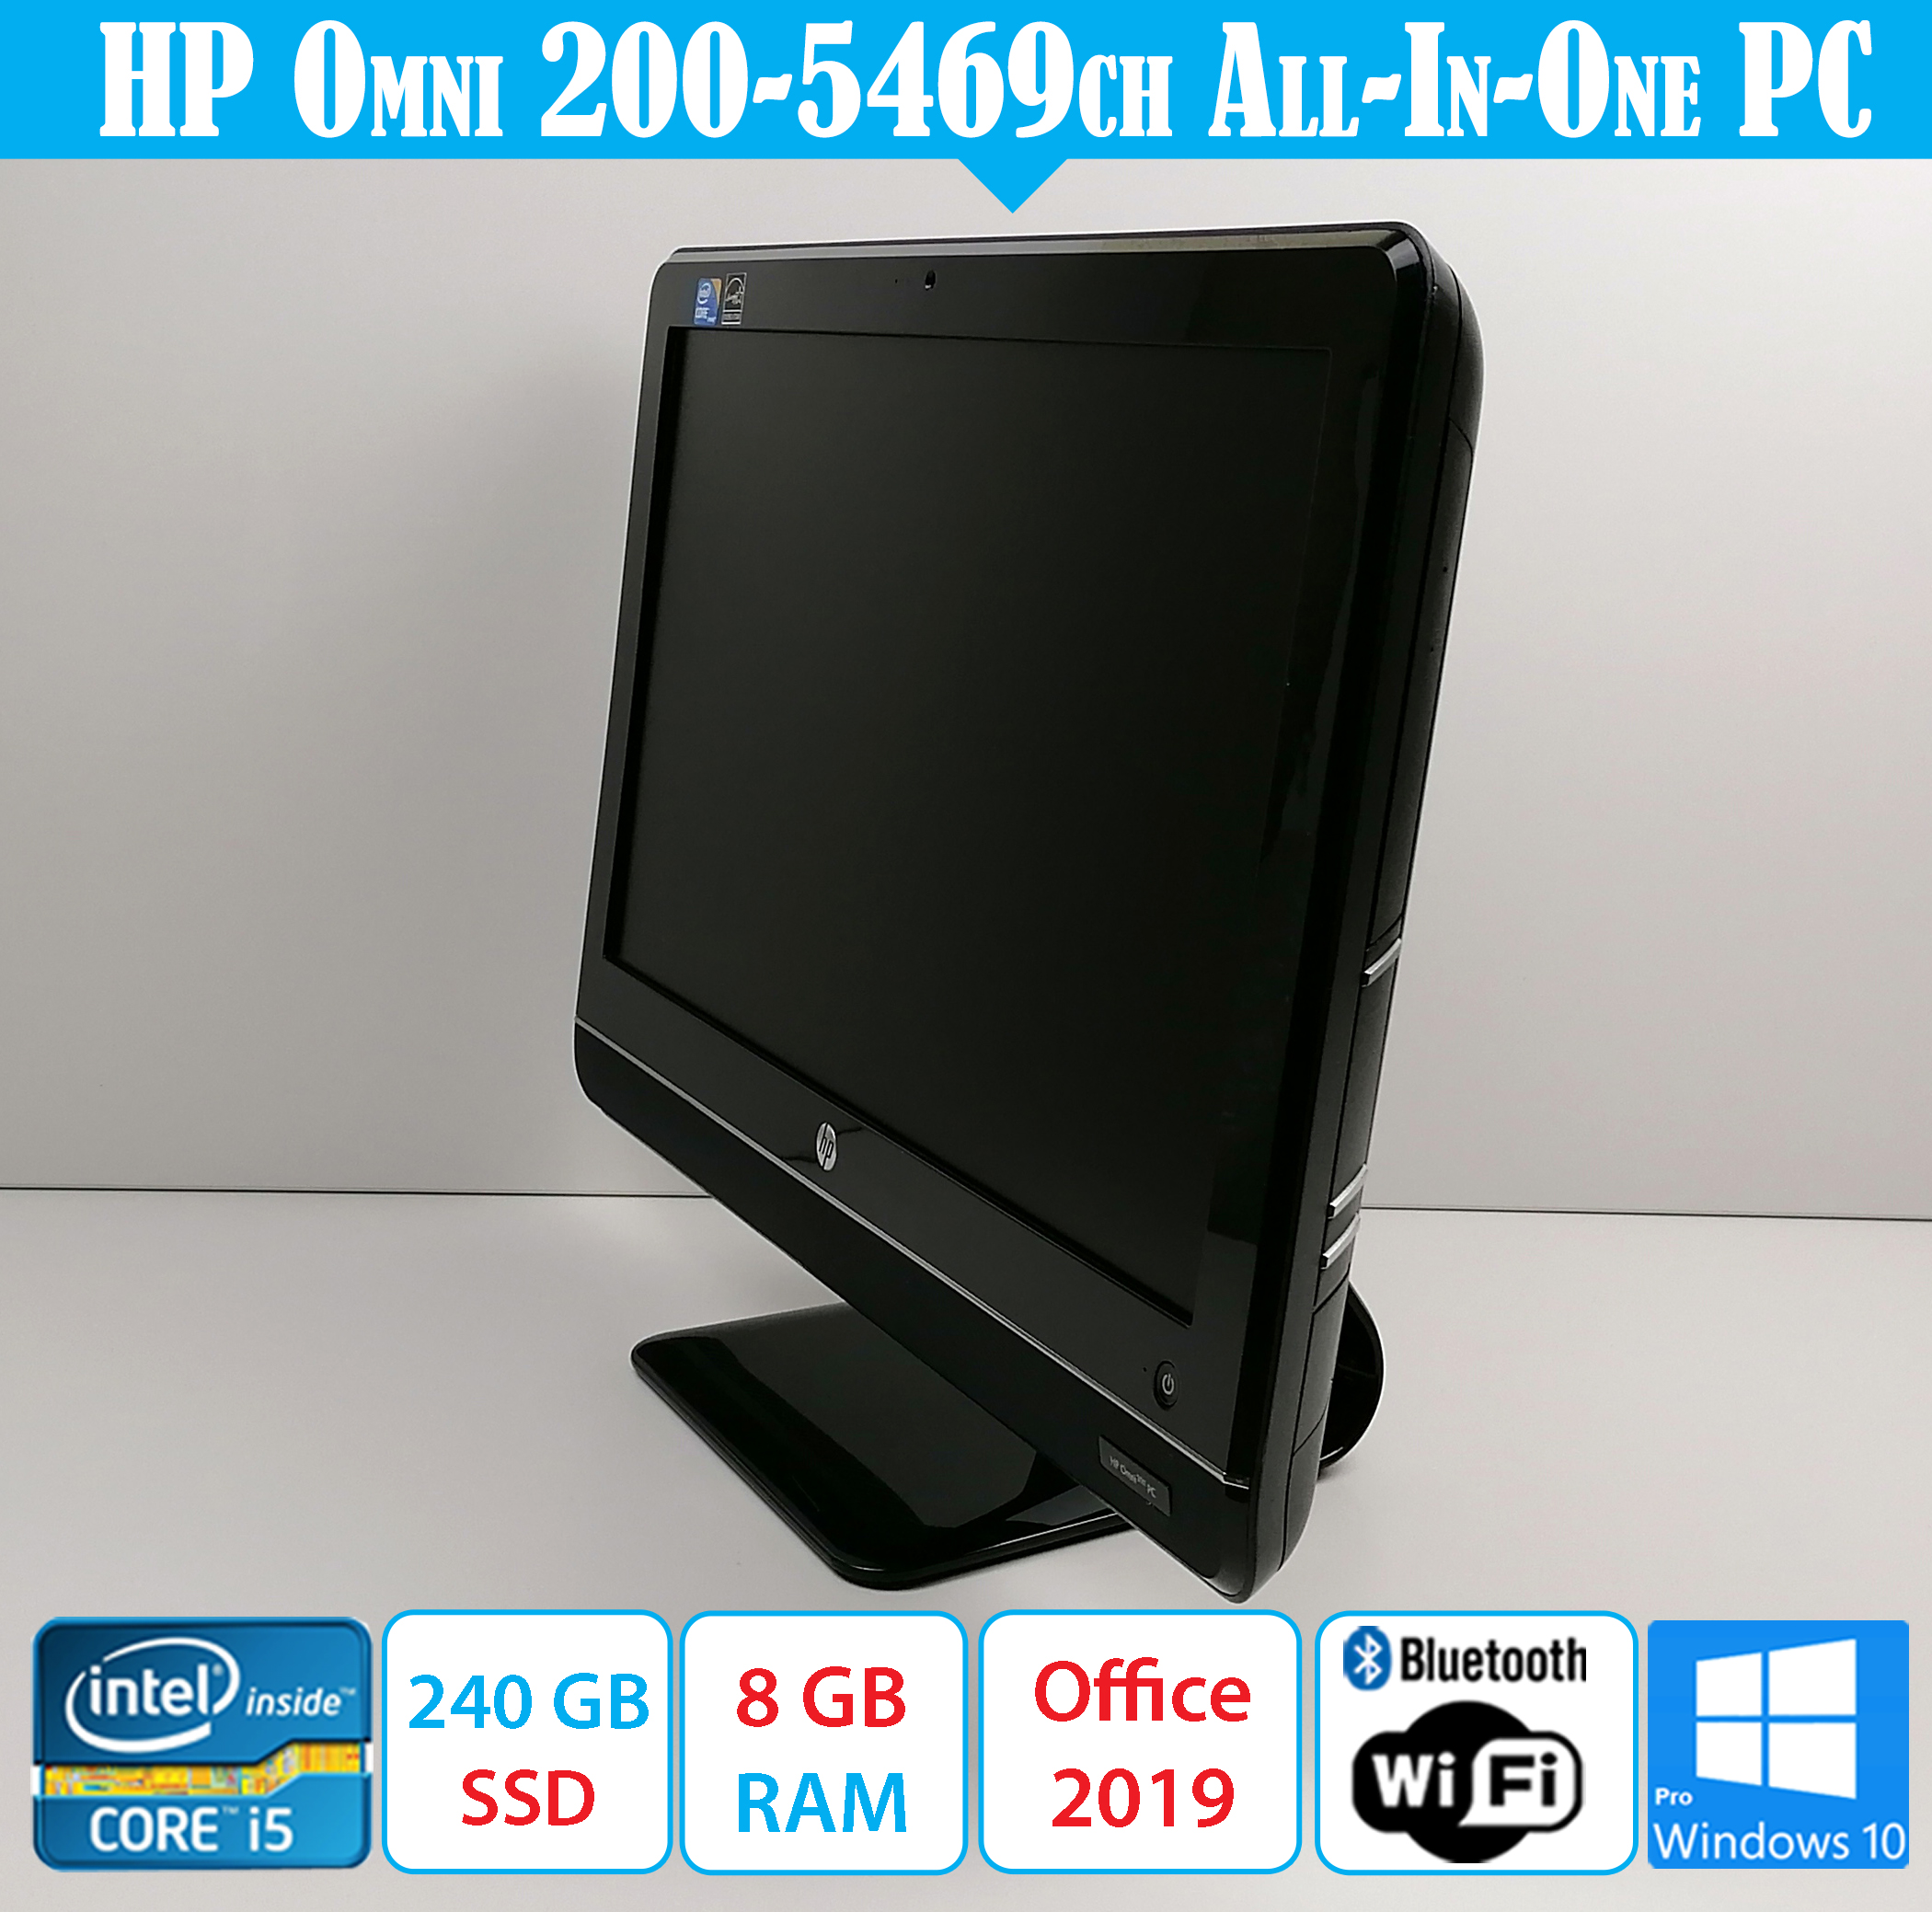 HP Omni AIO PC